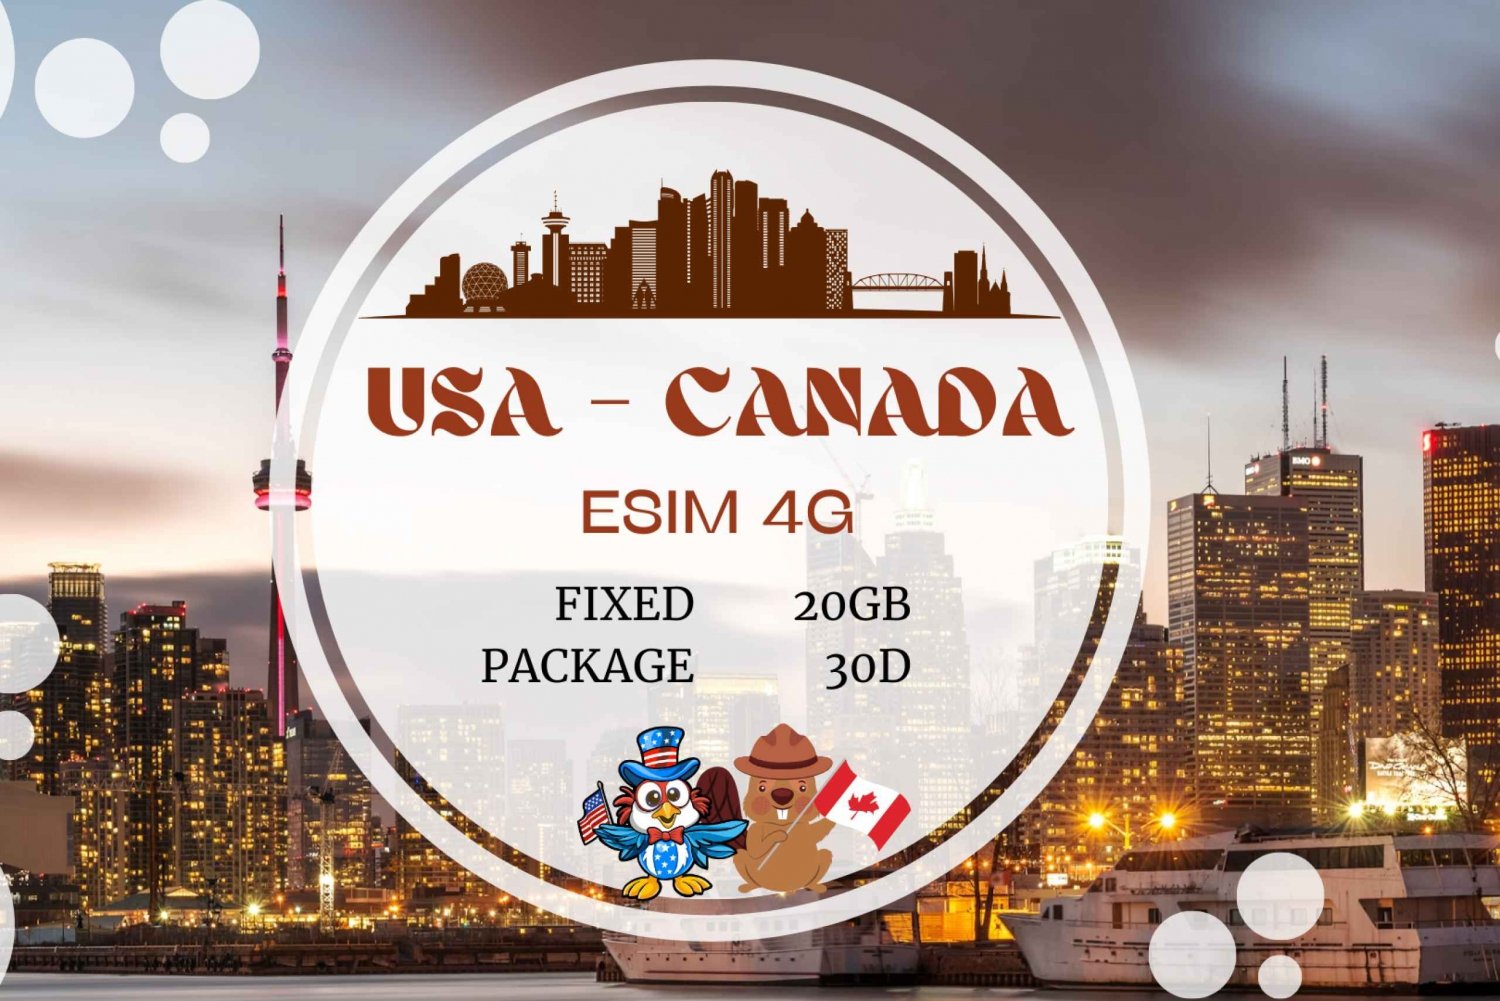 Canada e USA: eSIM Dati illimitati per turisti e viaggiatori